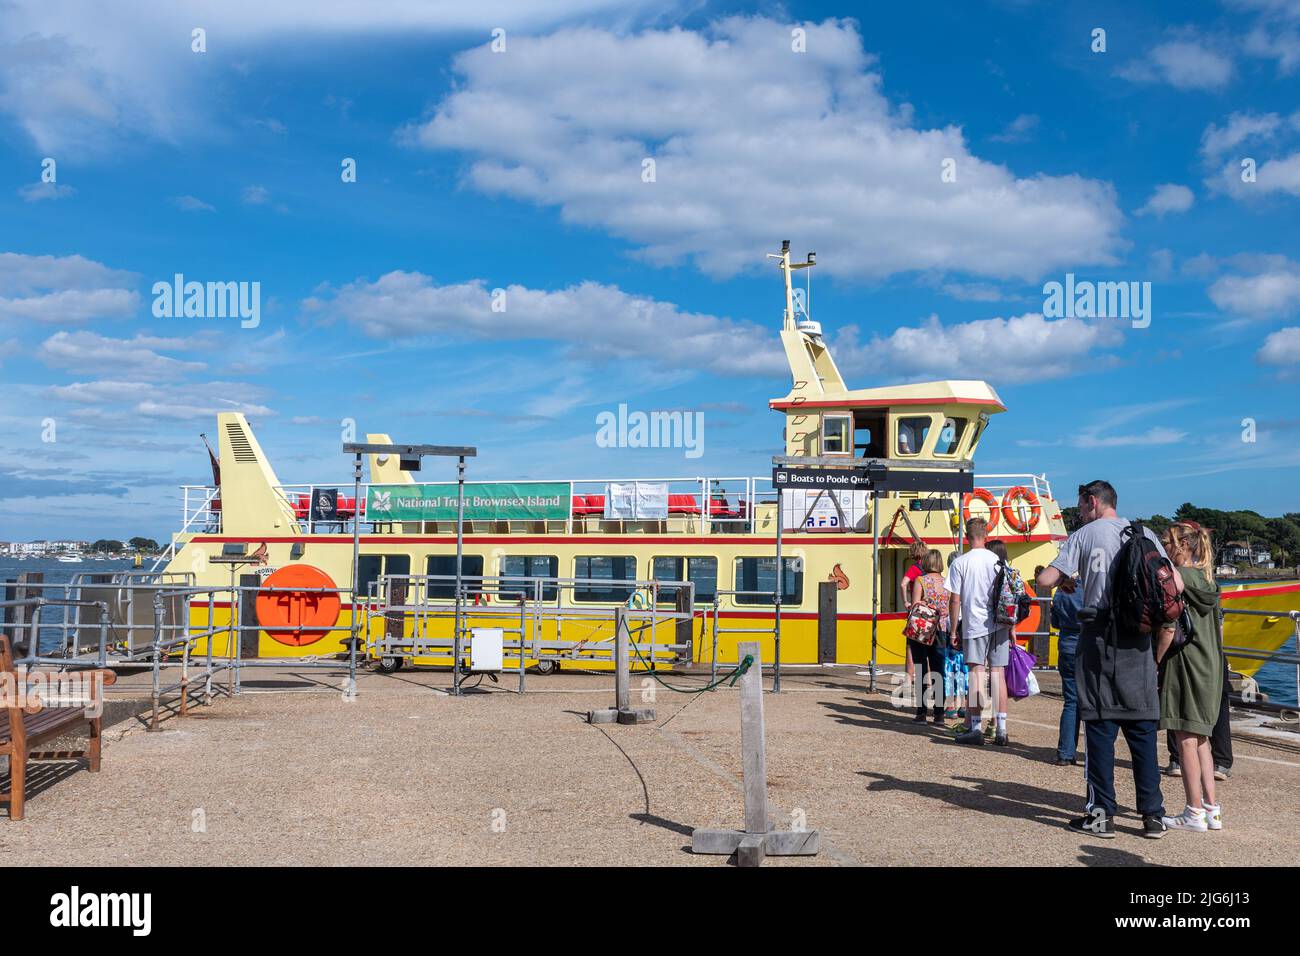 La barca gialla ormeggiata a Brownsea Island Quay, per raccogliere i passeggeri per il viaggio di ritorno a Poole, Dorset, Inghilterra, Regno Unito, in una giornata estiva soleggiata Foto Stock